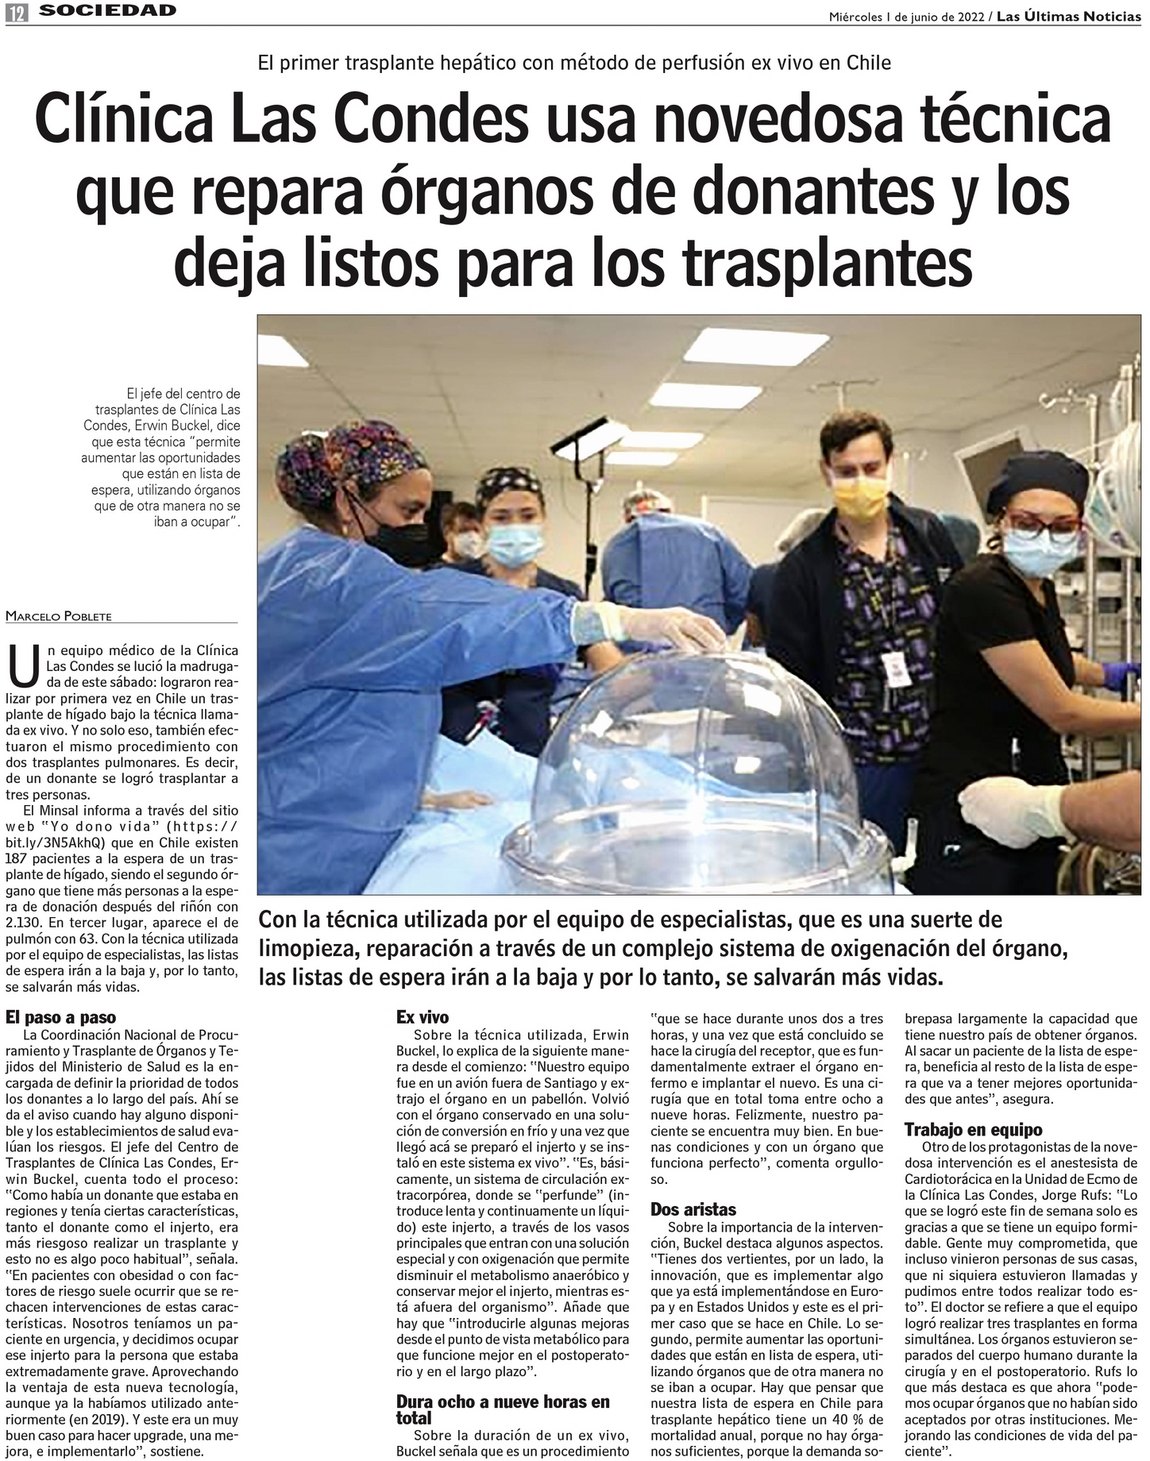 Clínica Las Condes Usa Novedosa Técnica Que Repara órganos De Donantes